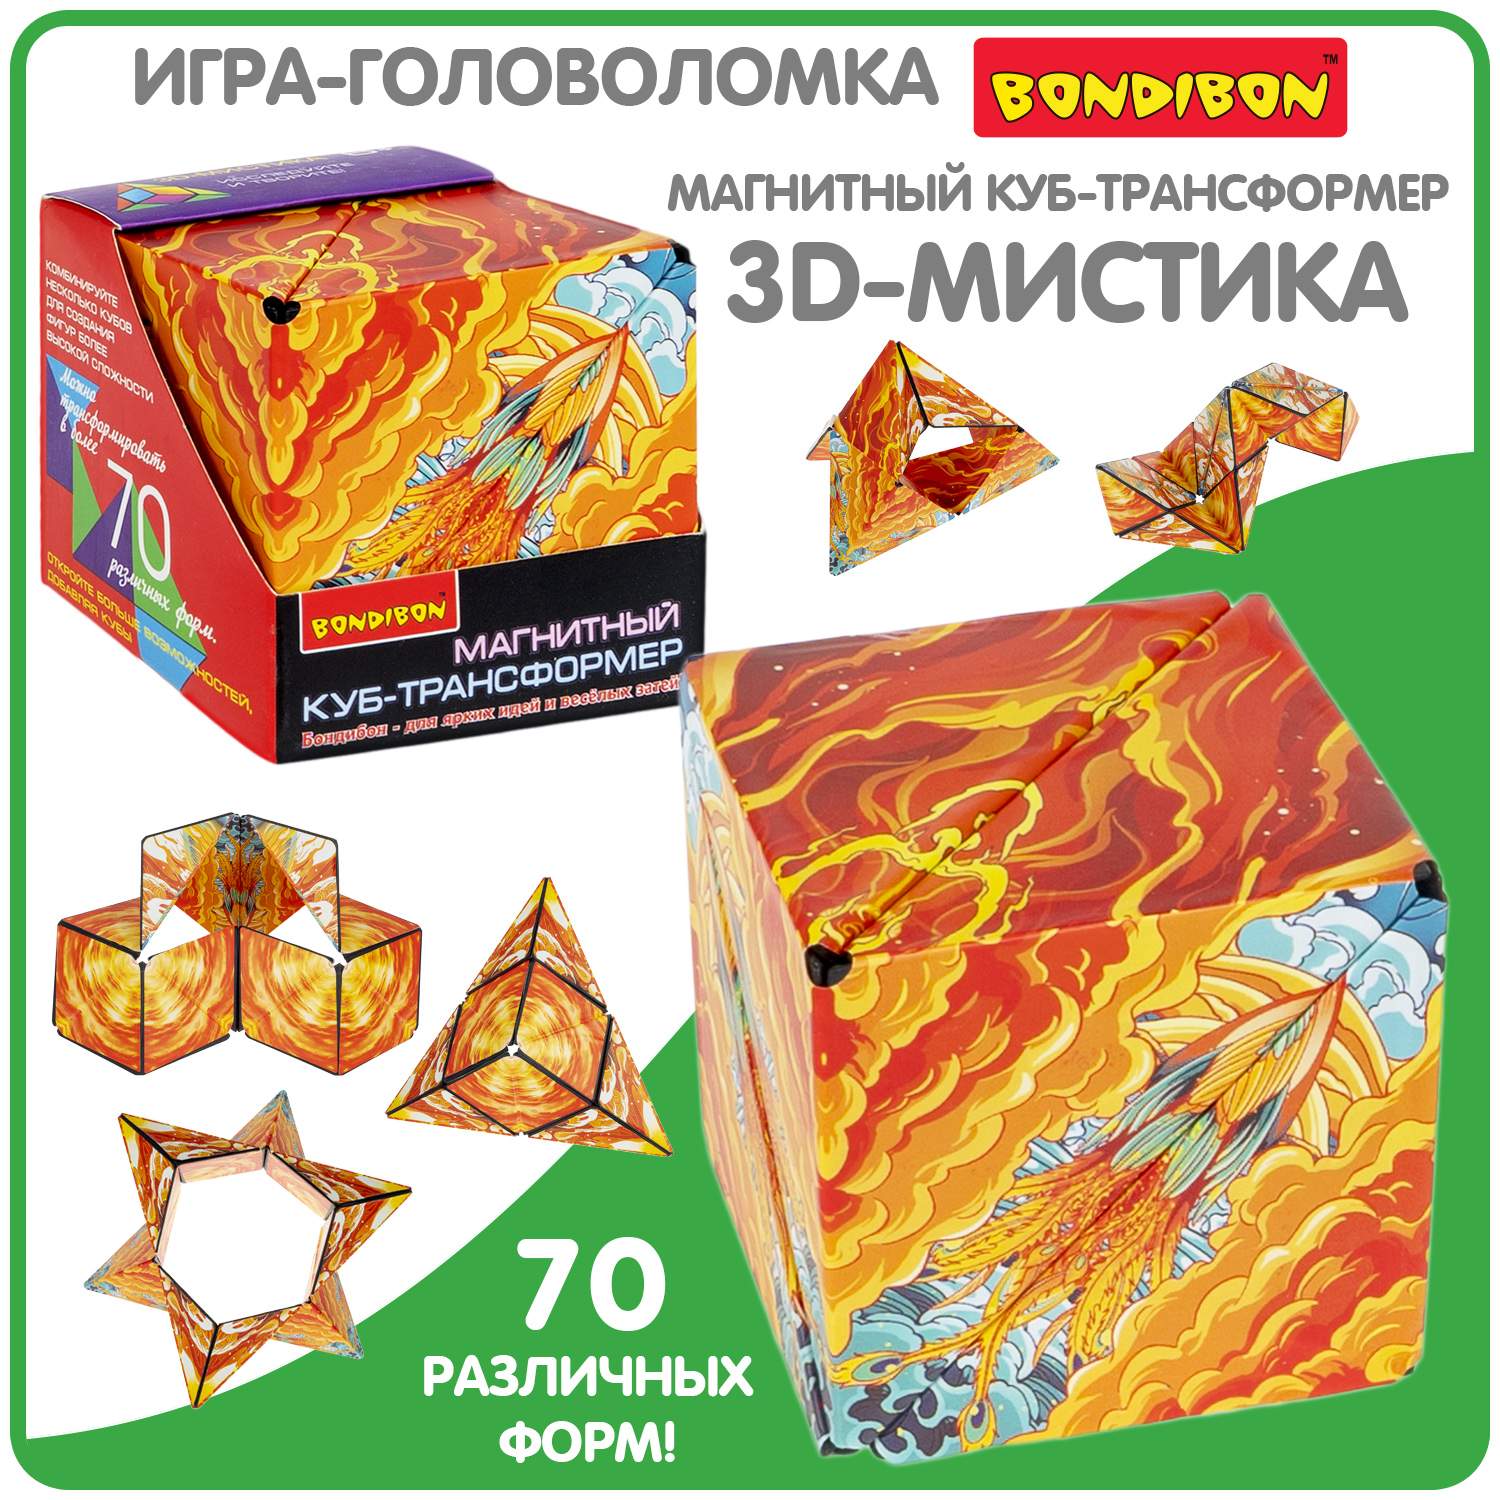 Купить магнитный куб трансформер Bondibon 3D-МИСТИКА, цены на Мегамаркет